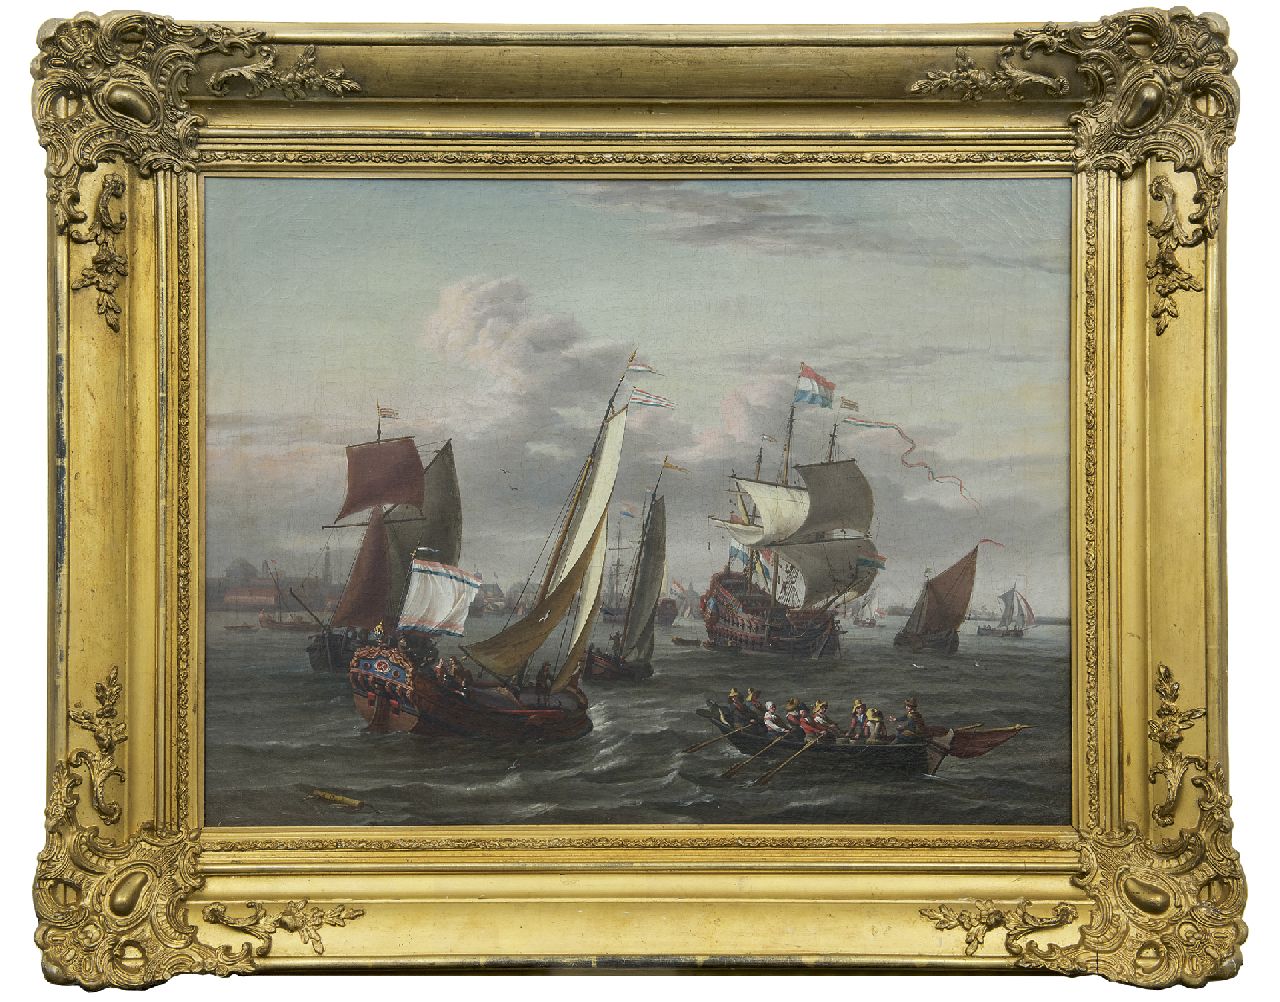 Blaauw J. de | Johannis de Blaauw | Schilderijen te koop aangeboden | Schepen op het IJ bij Amsterdam, olieverf op doek 48,3 x 64,5 cm